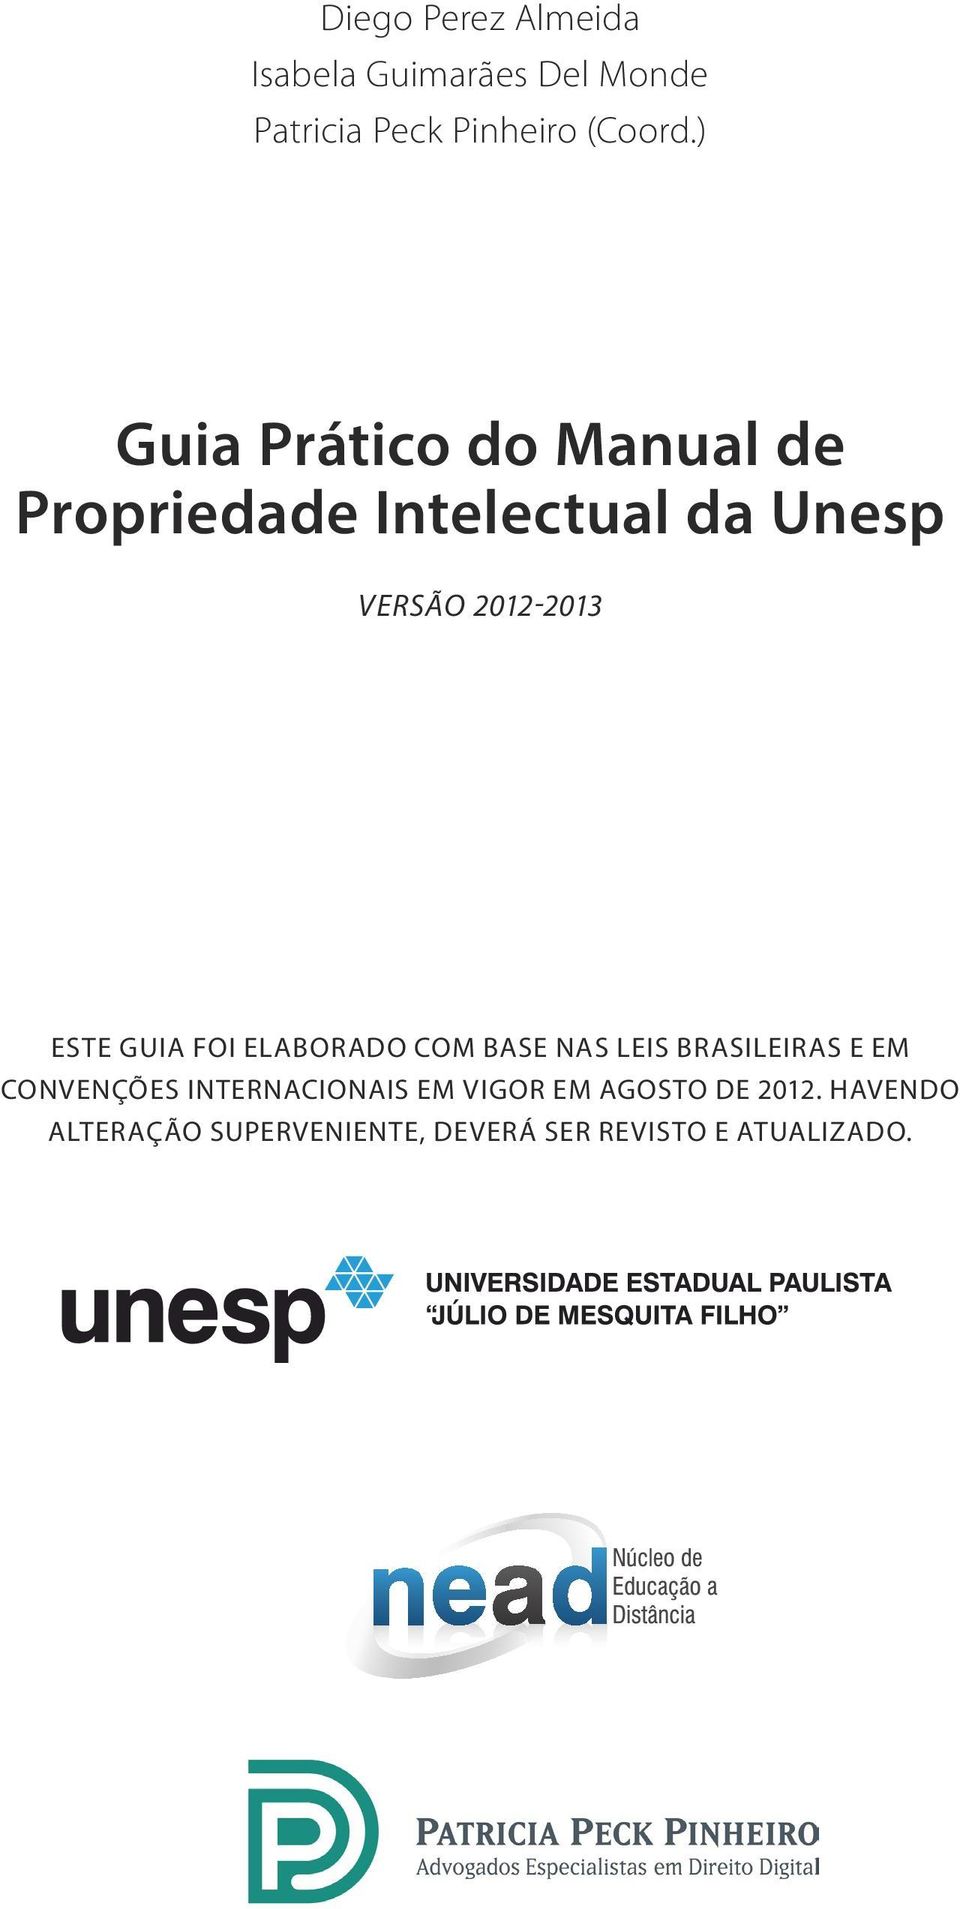 guia foi elaborado com base nas leis brasileiras e em convenções internacionais em